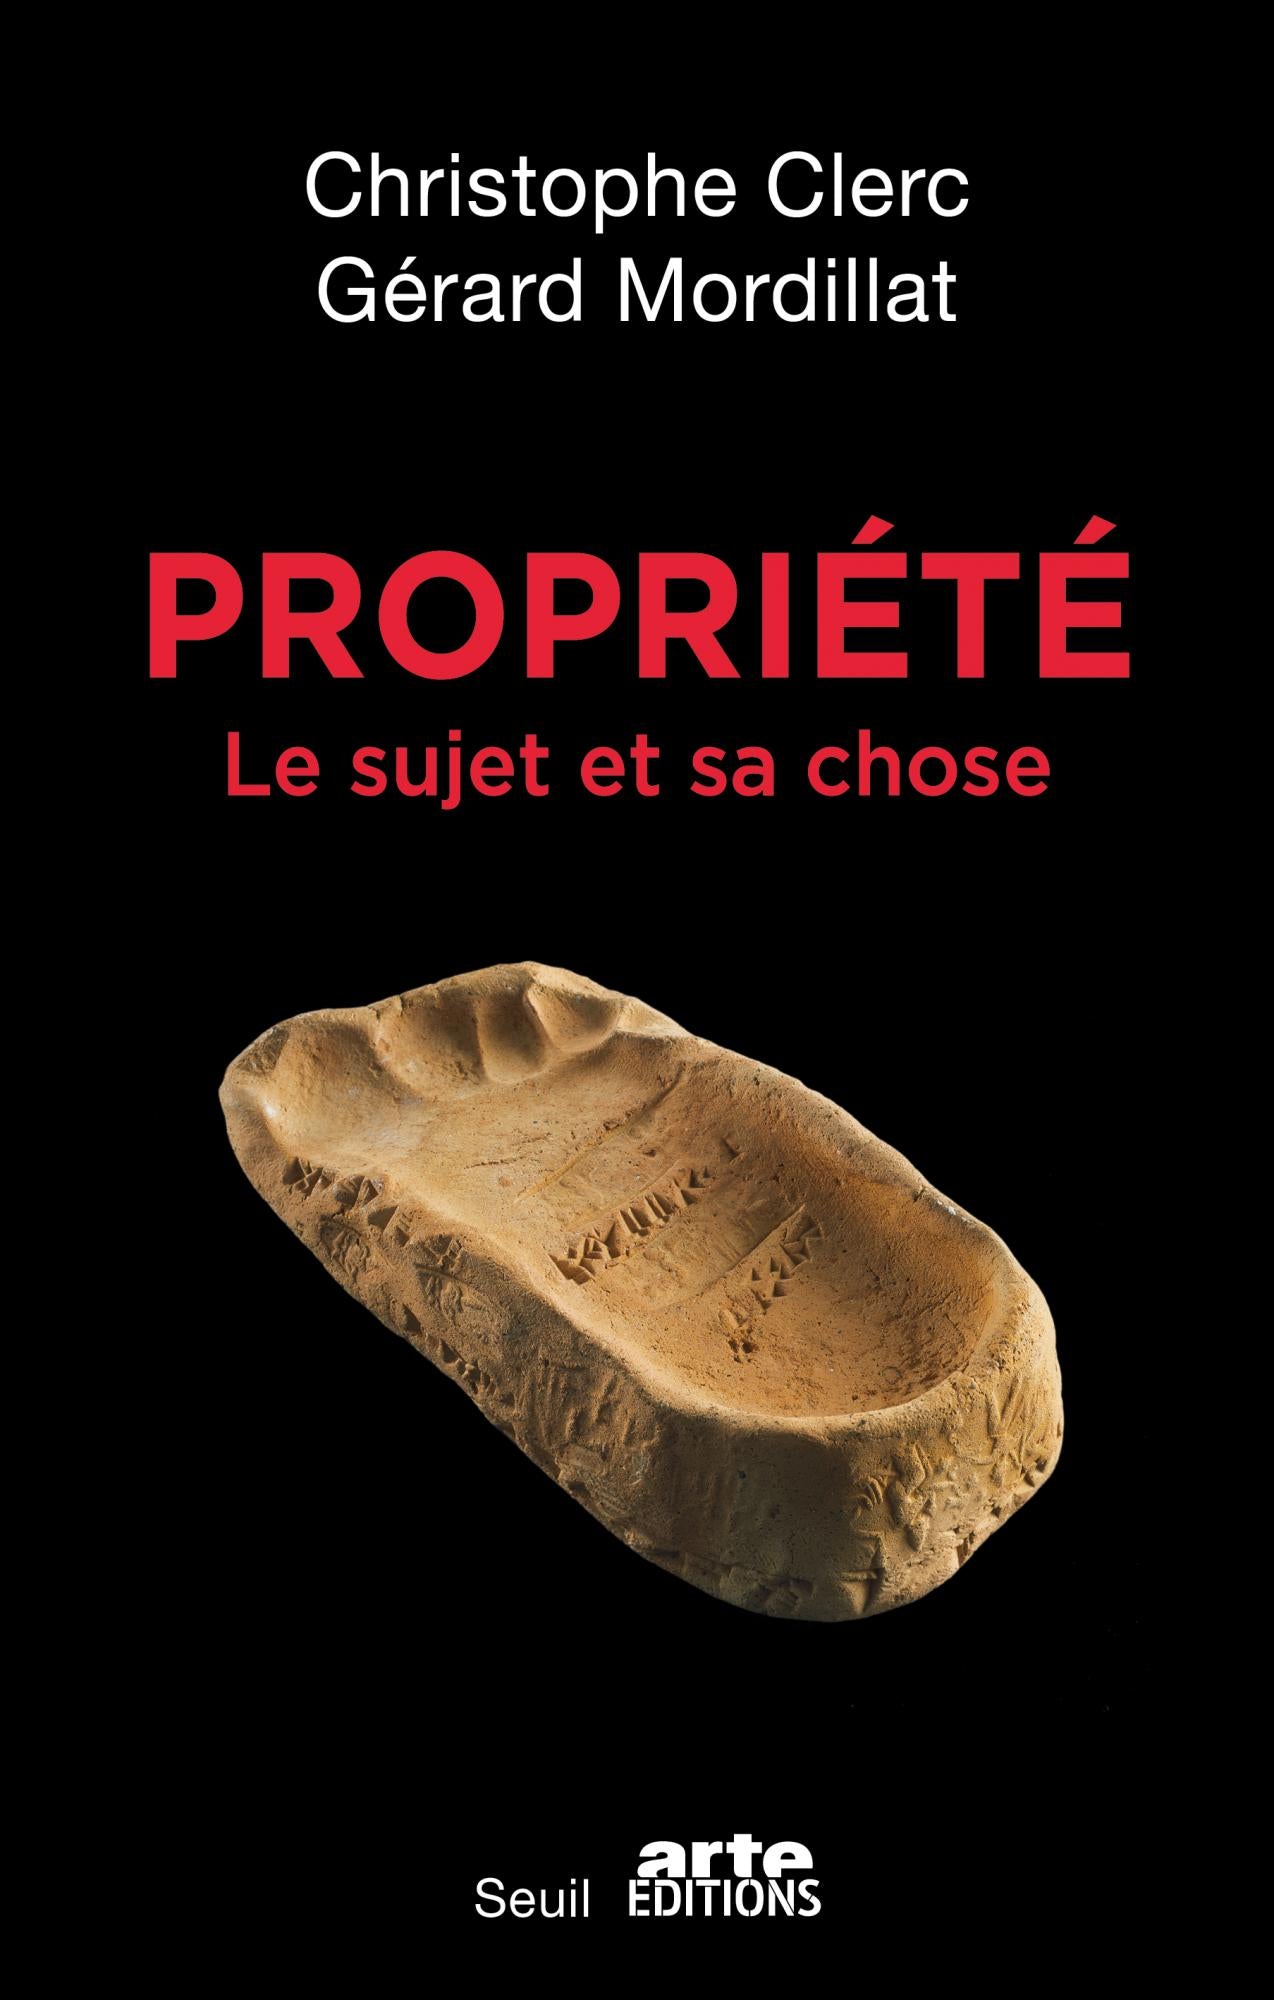 Propriété  Le sujet et sa chose - Gérard Mordillat / Christophe Clerc